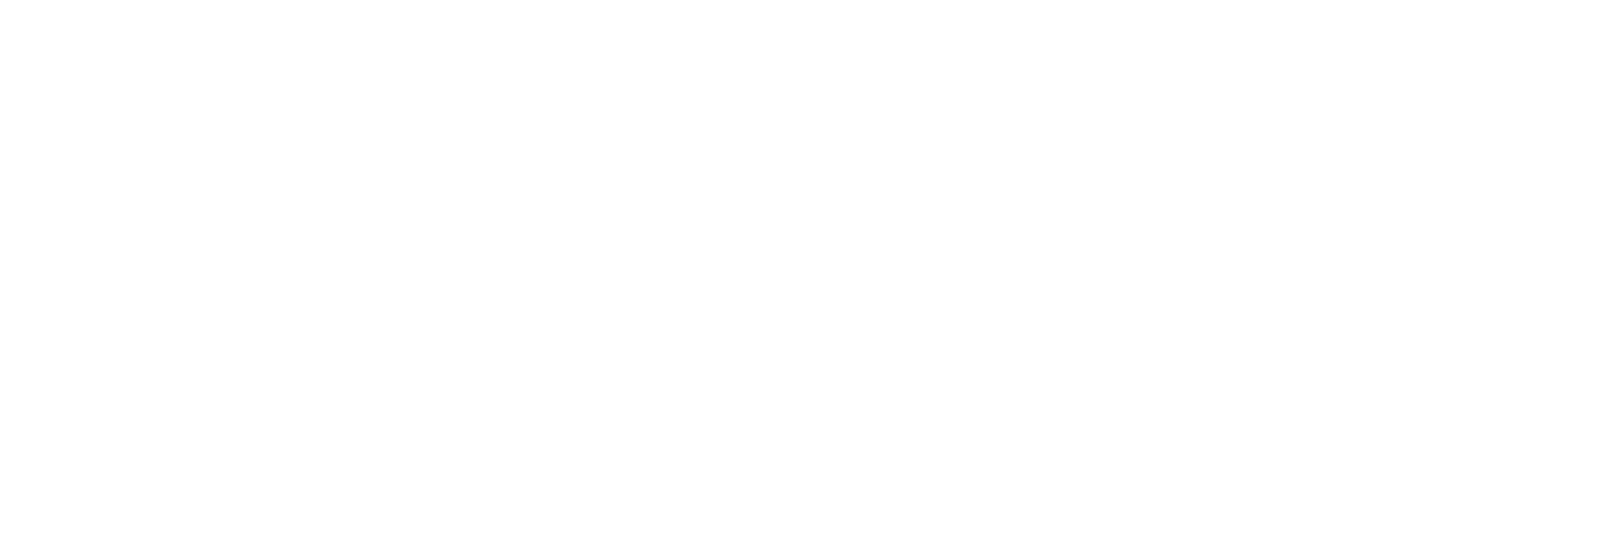 Idraet Pro Institute